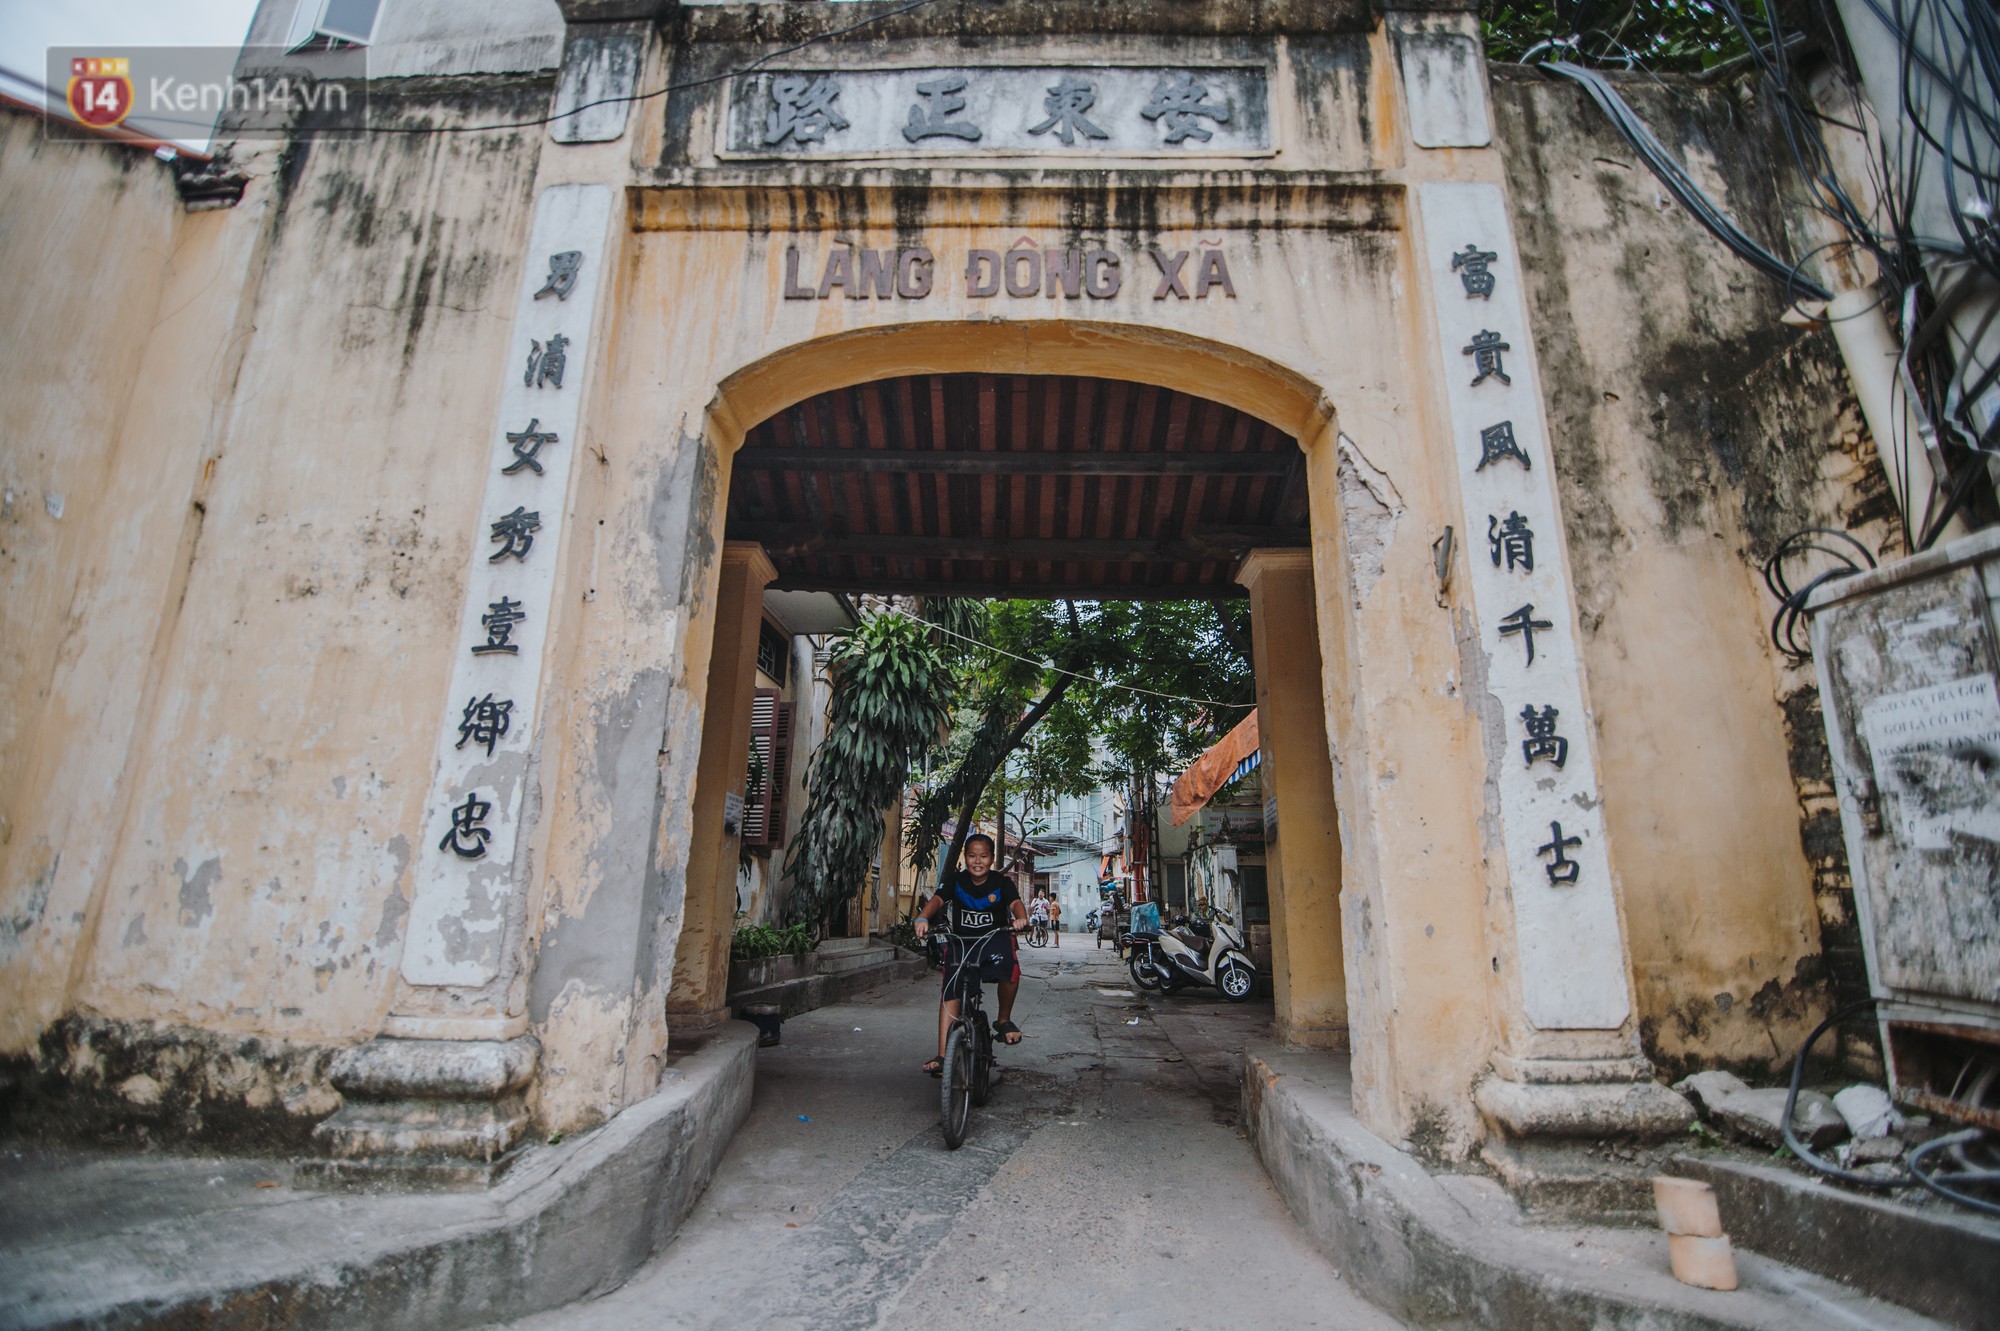 Chuyện về một con phố có nhiều cổng làng nhất Hà Nội: Đưa chân qua cổng phải tôn trọng nếp làng - Ảnh 8.